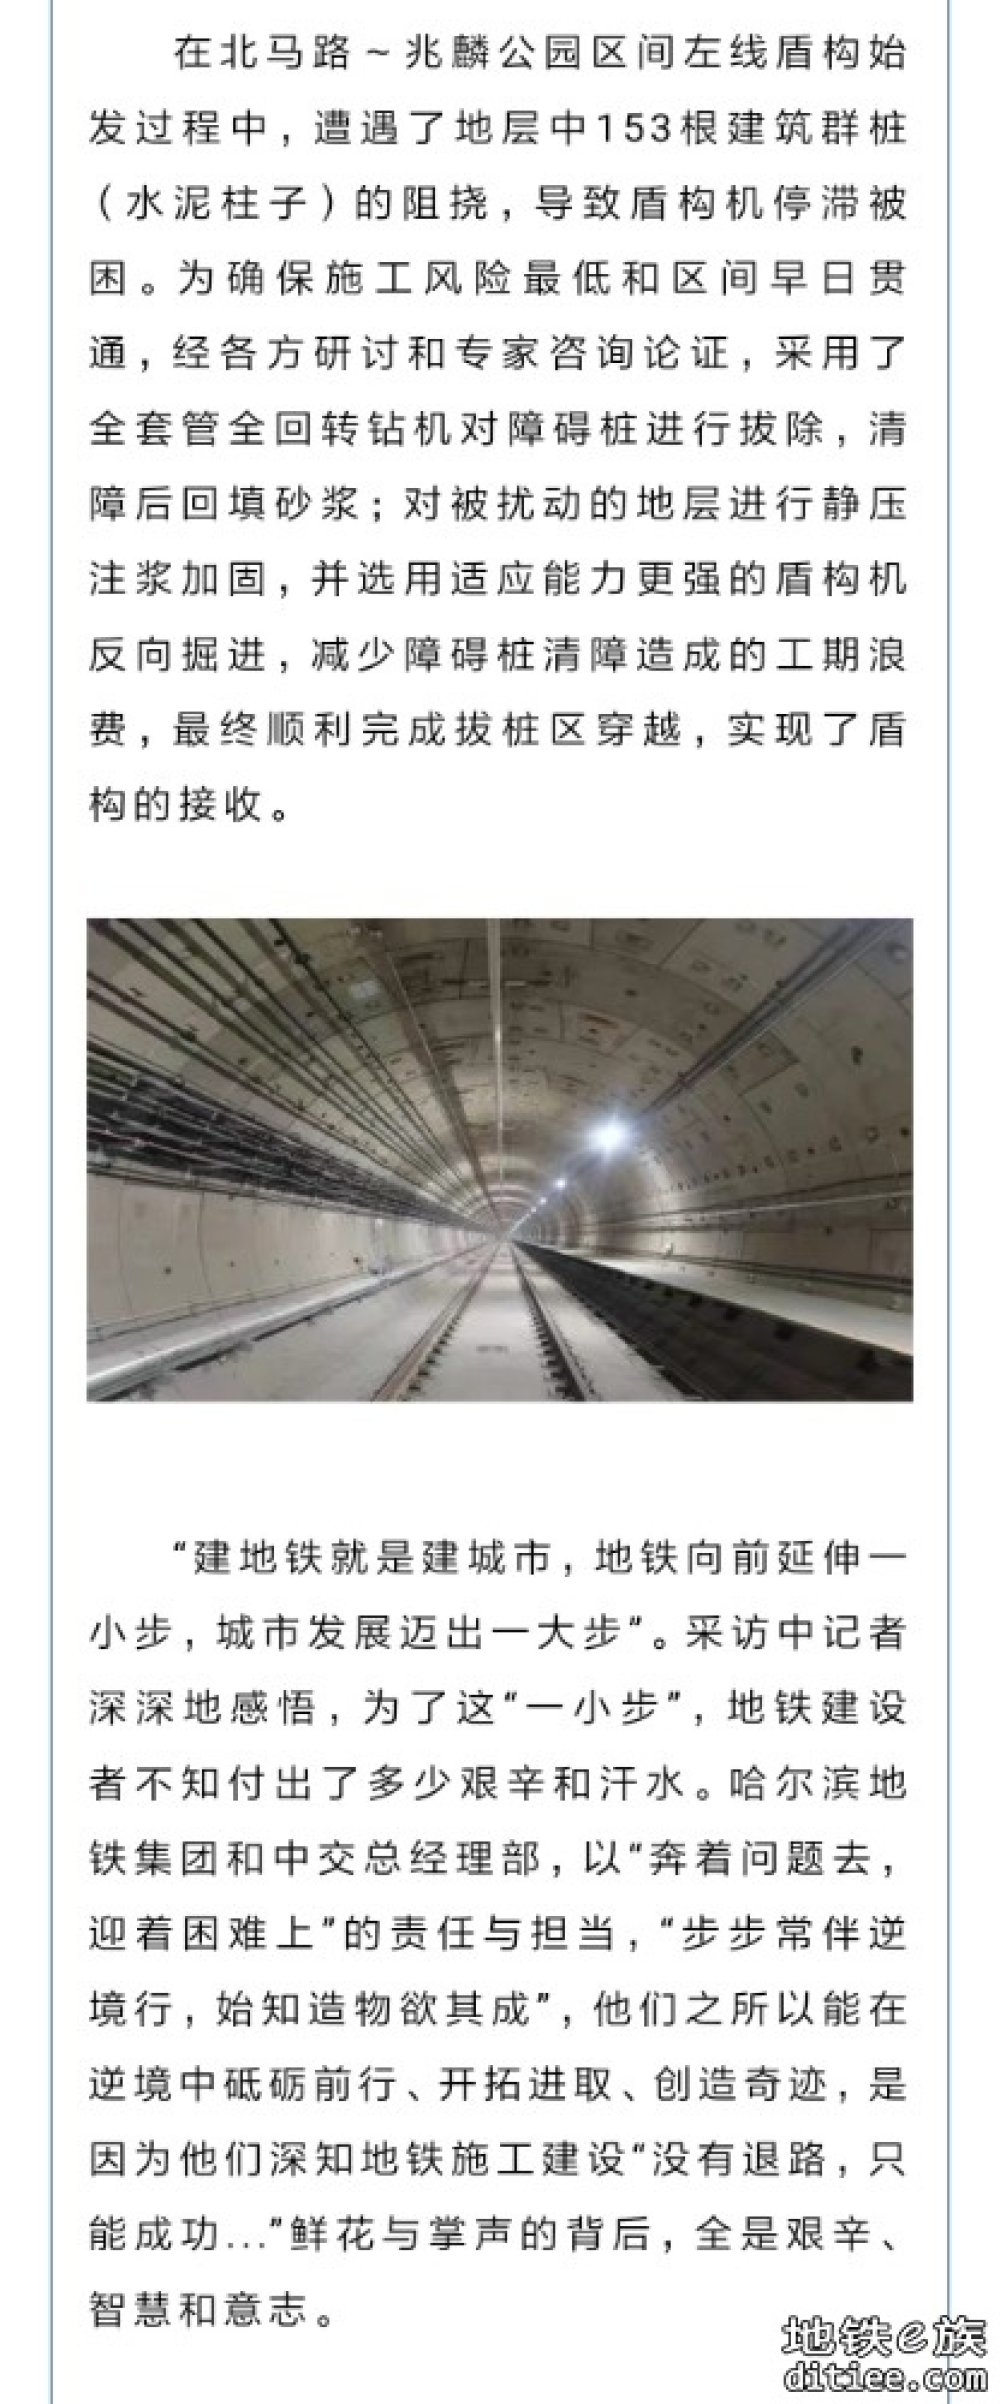 揭秘哈尔滨地铁3号线西北环隧道掘进“真相”